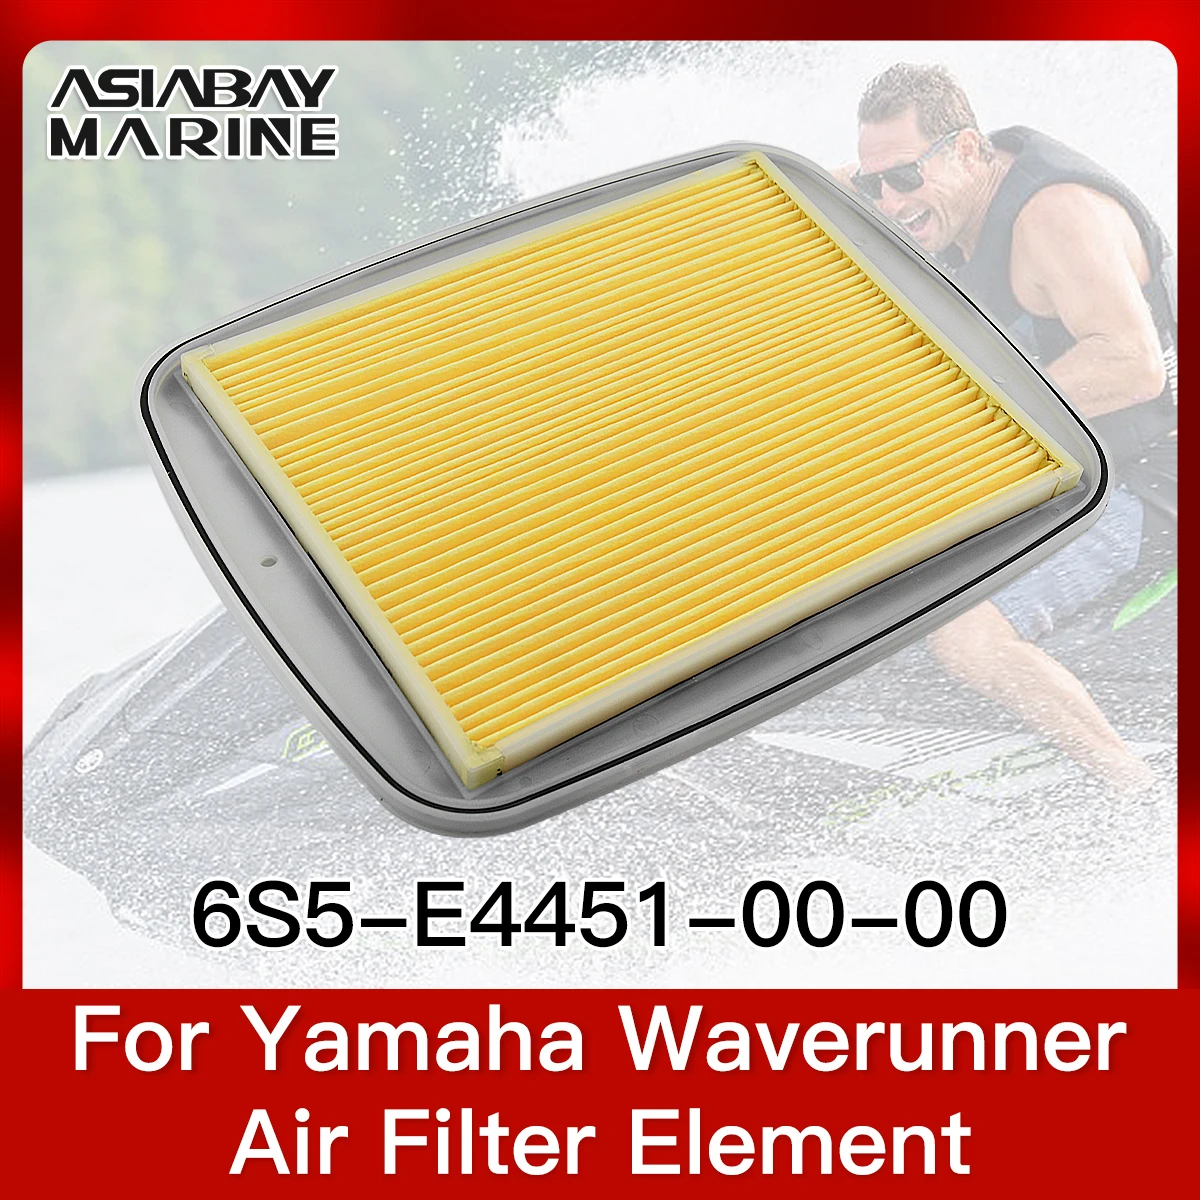 Air Filter Element For Yamaha Waverunner Gp 1800 1.8T Fx Fzr Fzs Vxr Vxs Vx Fx - $32.28